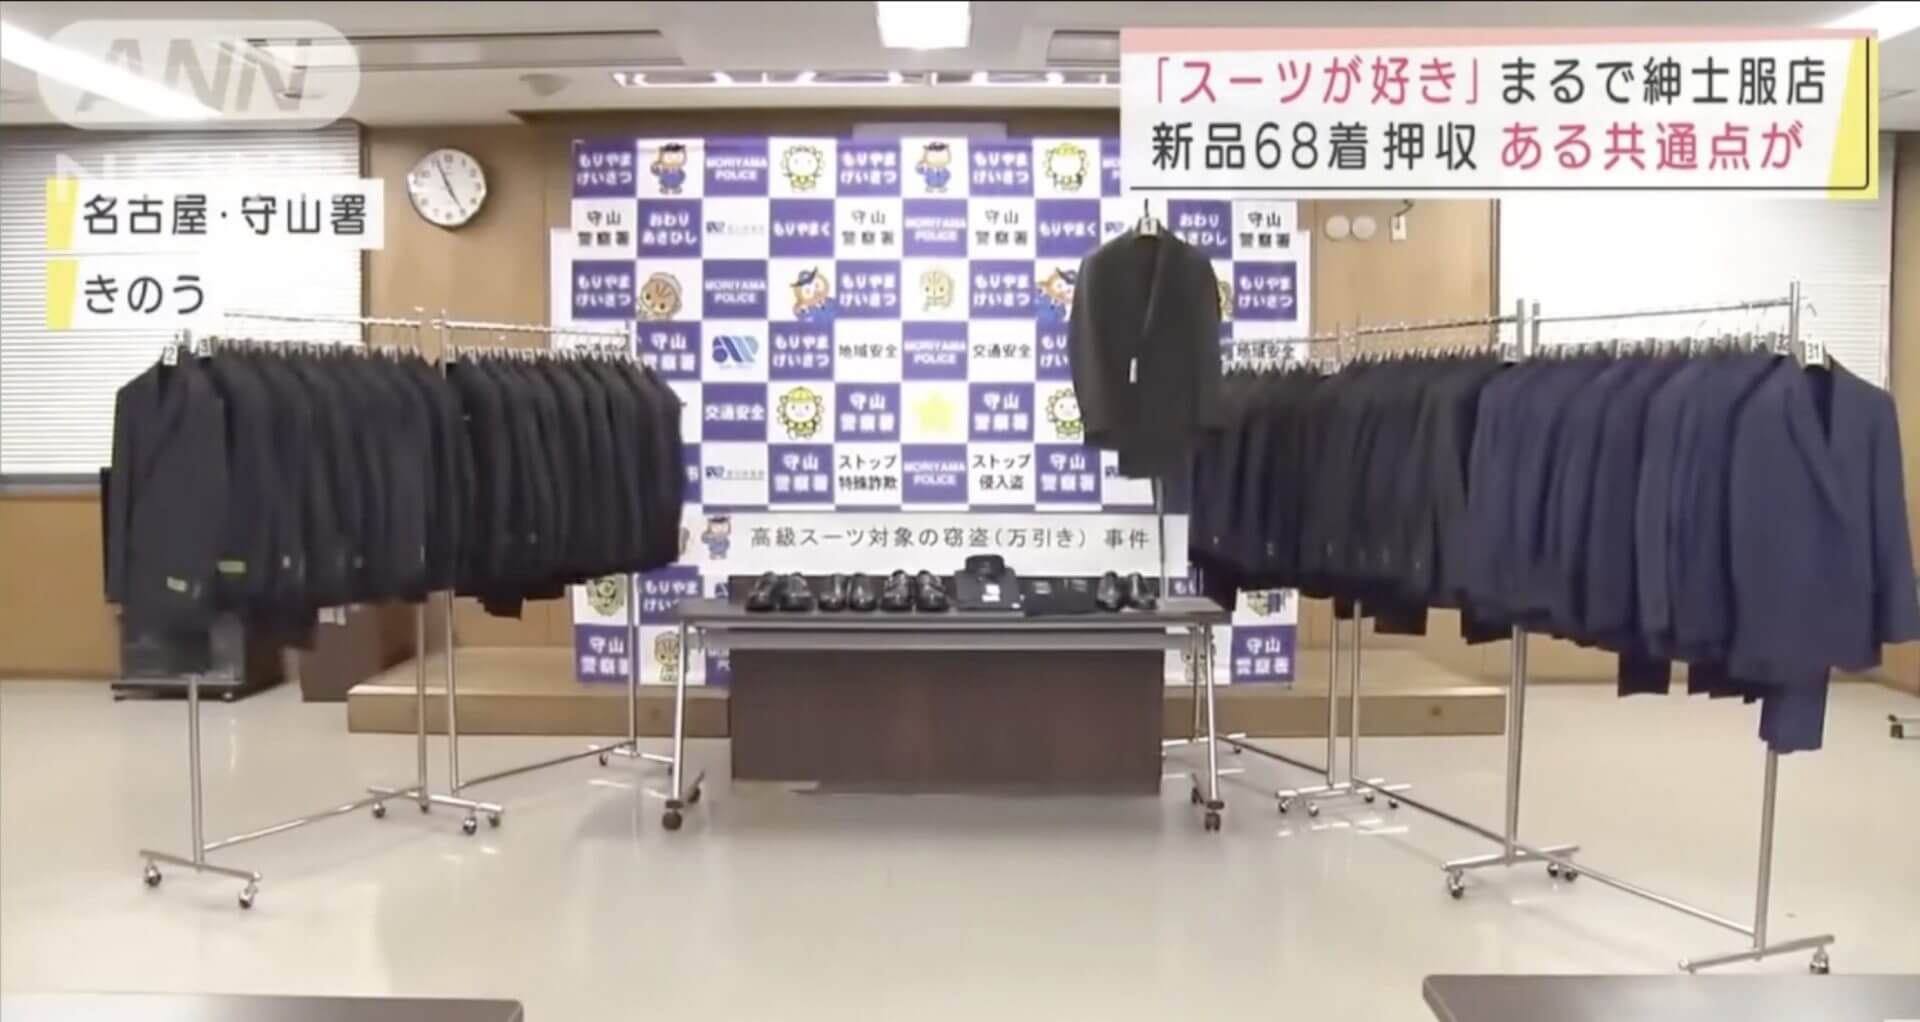 Japonês é preso por furto e polícia encontra com 68 ternos em sua casa